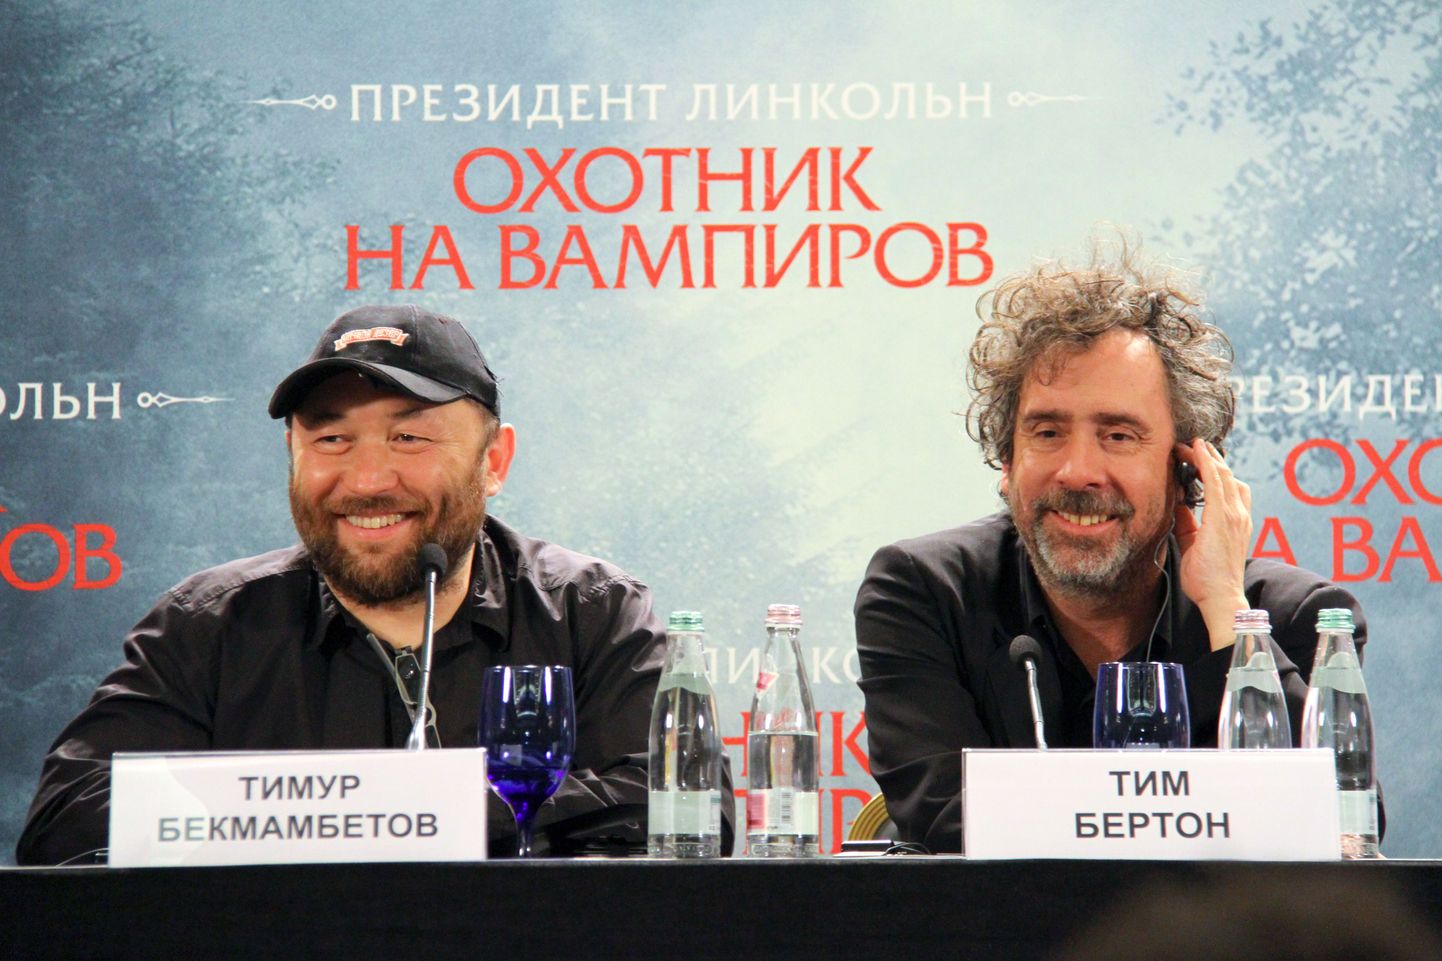 Режиссер и сопродюсер на пресс-конференции в Москве.